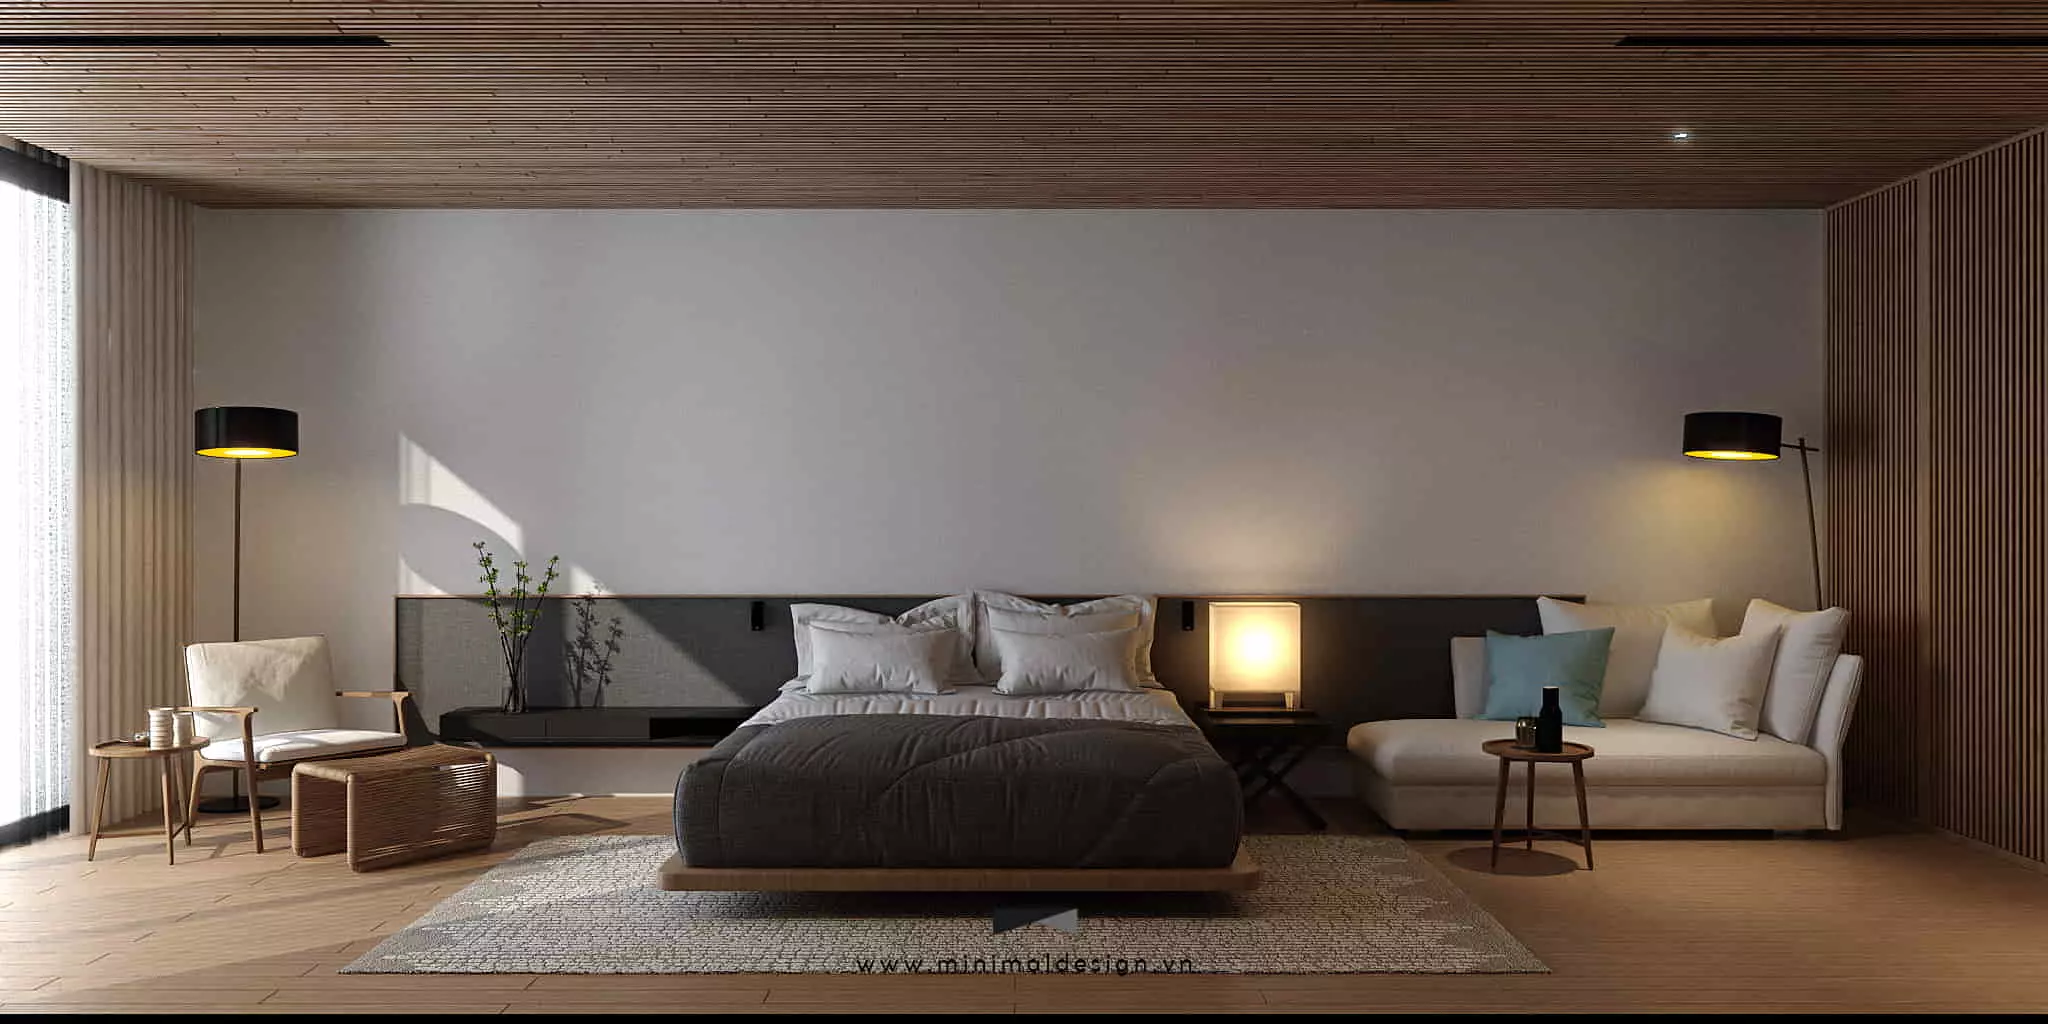 Phòng ngủ phong cách tối giản giúp tôn lên vẻ đẹp mộc mạc, chú trọng vào không gian tổng thể thay vì các chi tiết rườm rà.